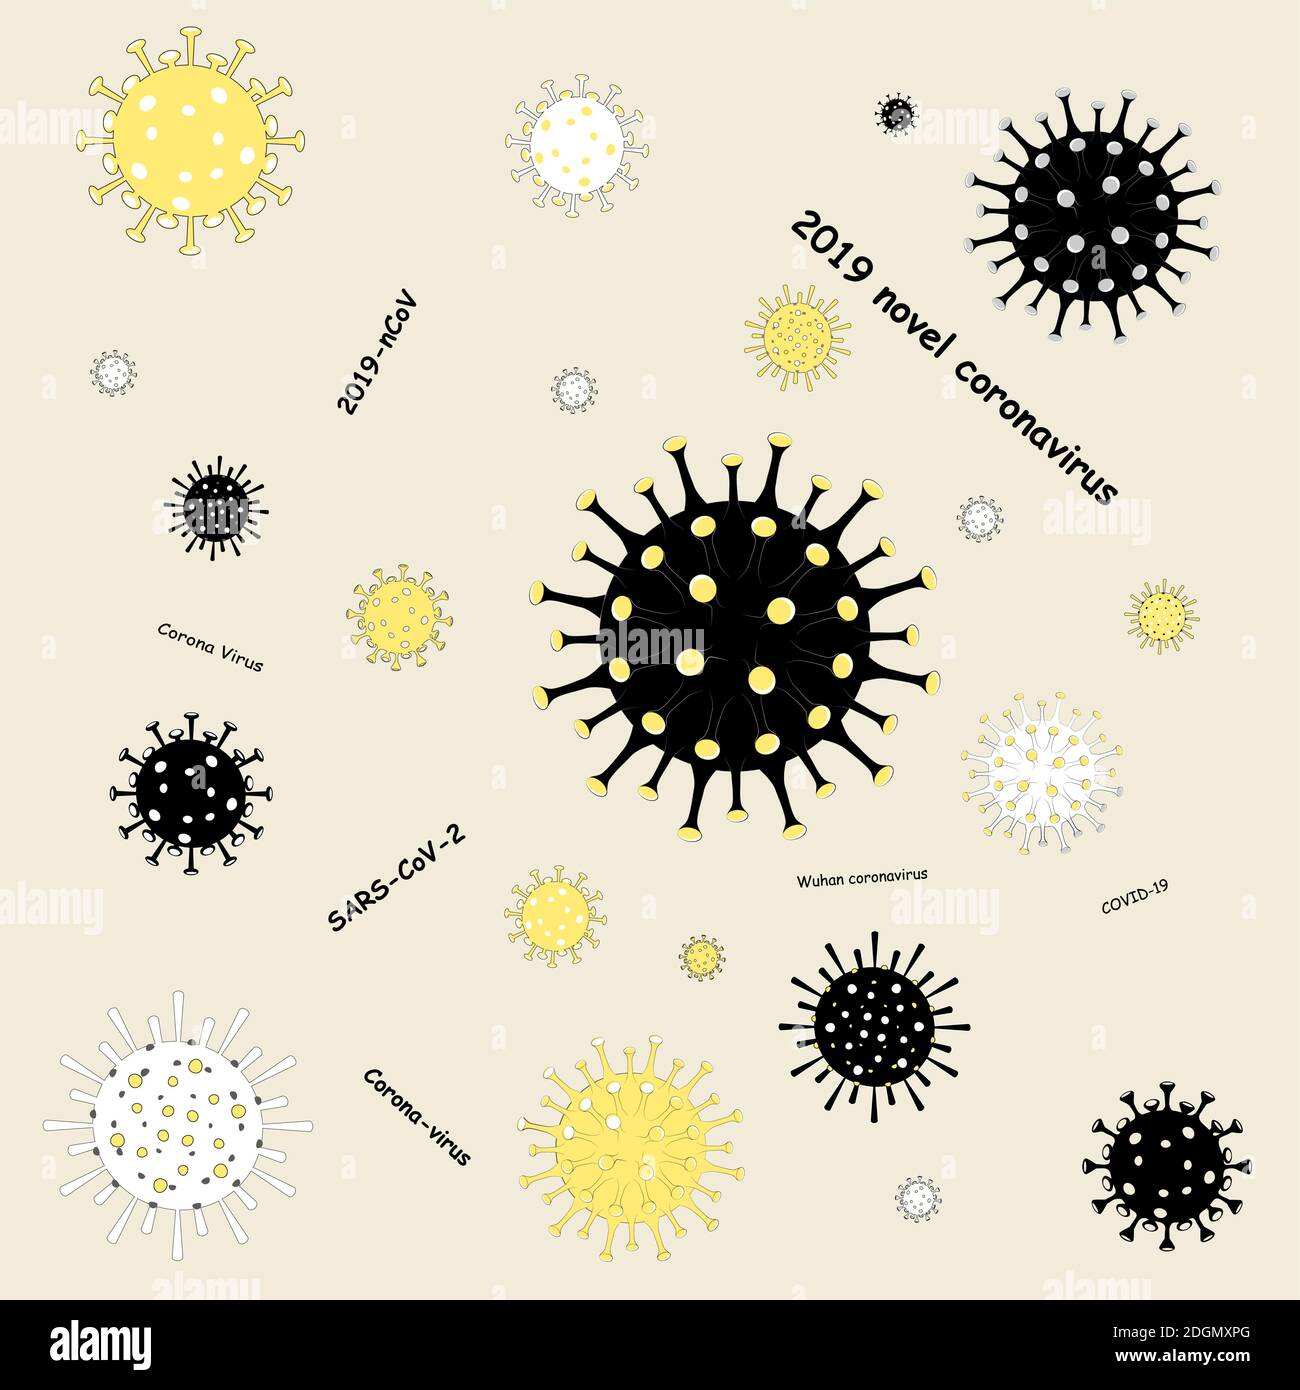 Coronavirus 2019-nCoV. COVID-19. Nuovo focolaio di polmonite da coronavirus. Diversi tipi di virus. Modello senza giunture sull'infezione virale. Vettore piatto Illustrazione Vettoriale